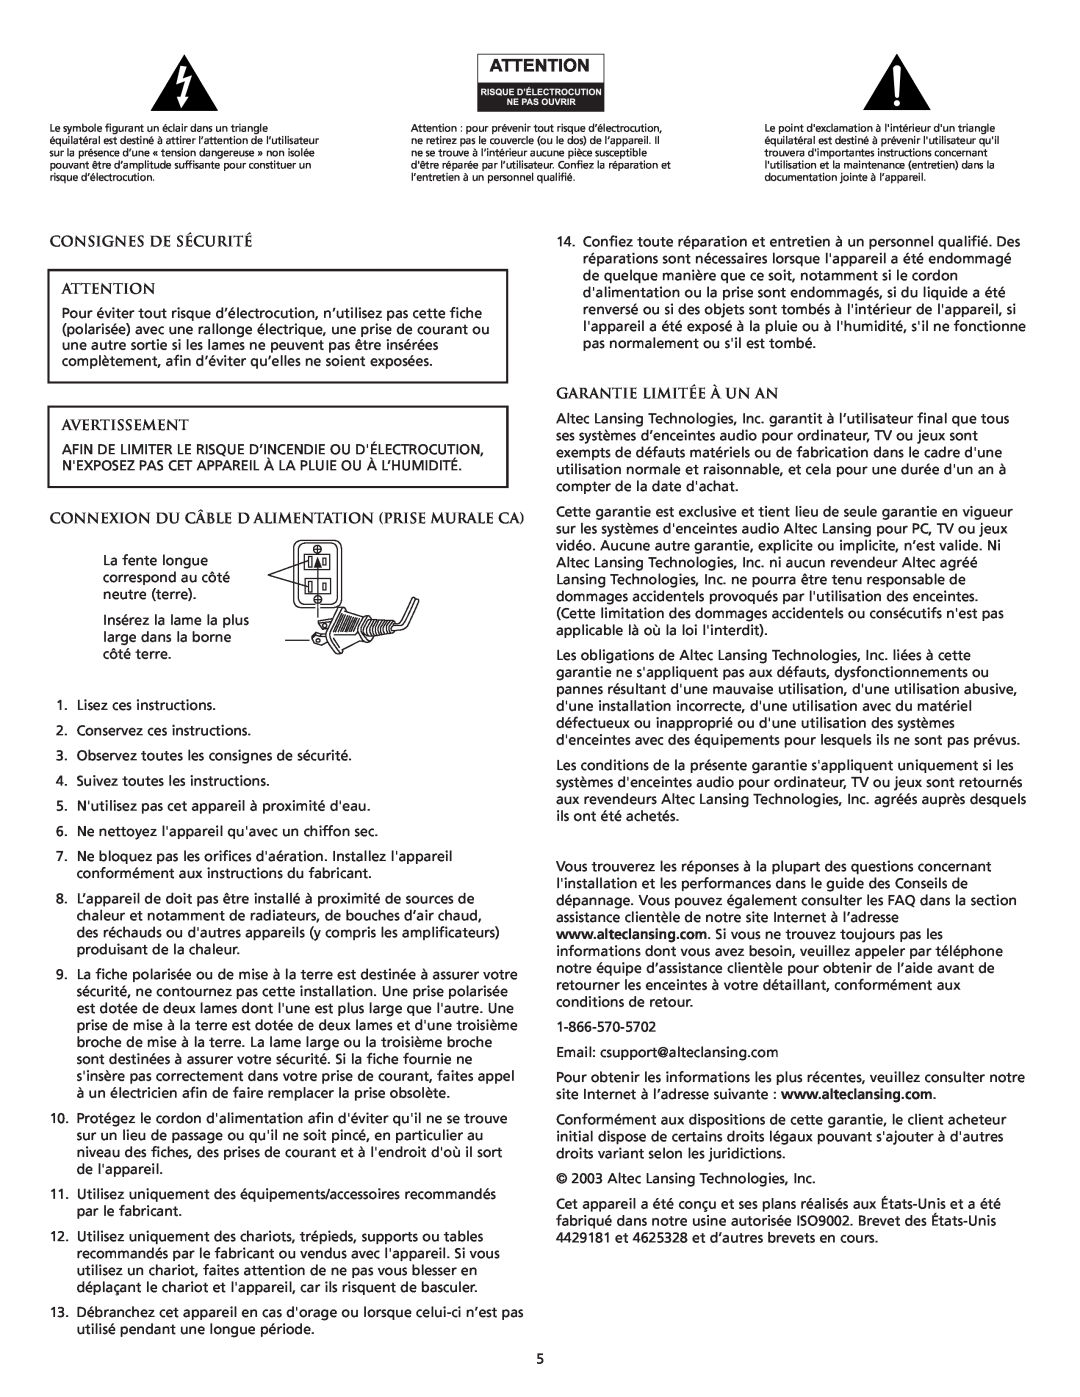 Altec Lansing CS21 manual Consignes De Sécurité, Avertissement, Connexion Du Câble D Alimentation Prise Murale Ca 